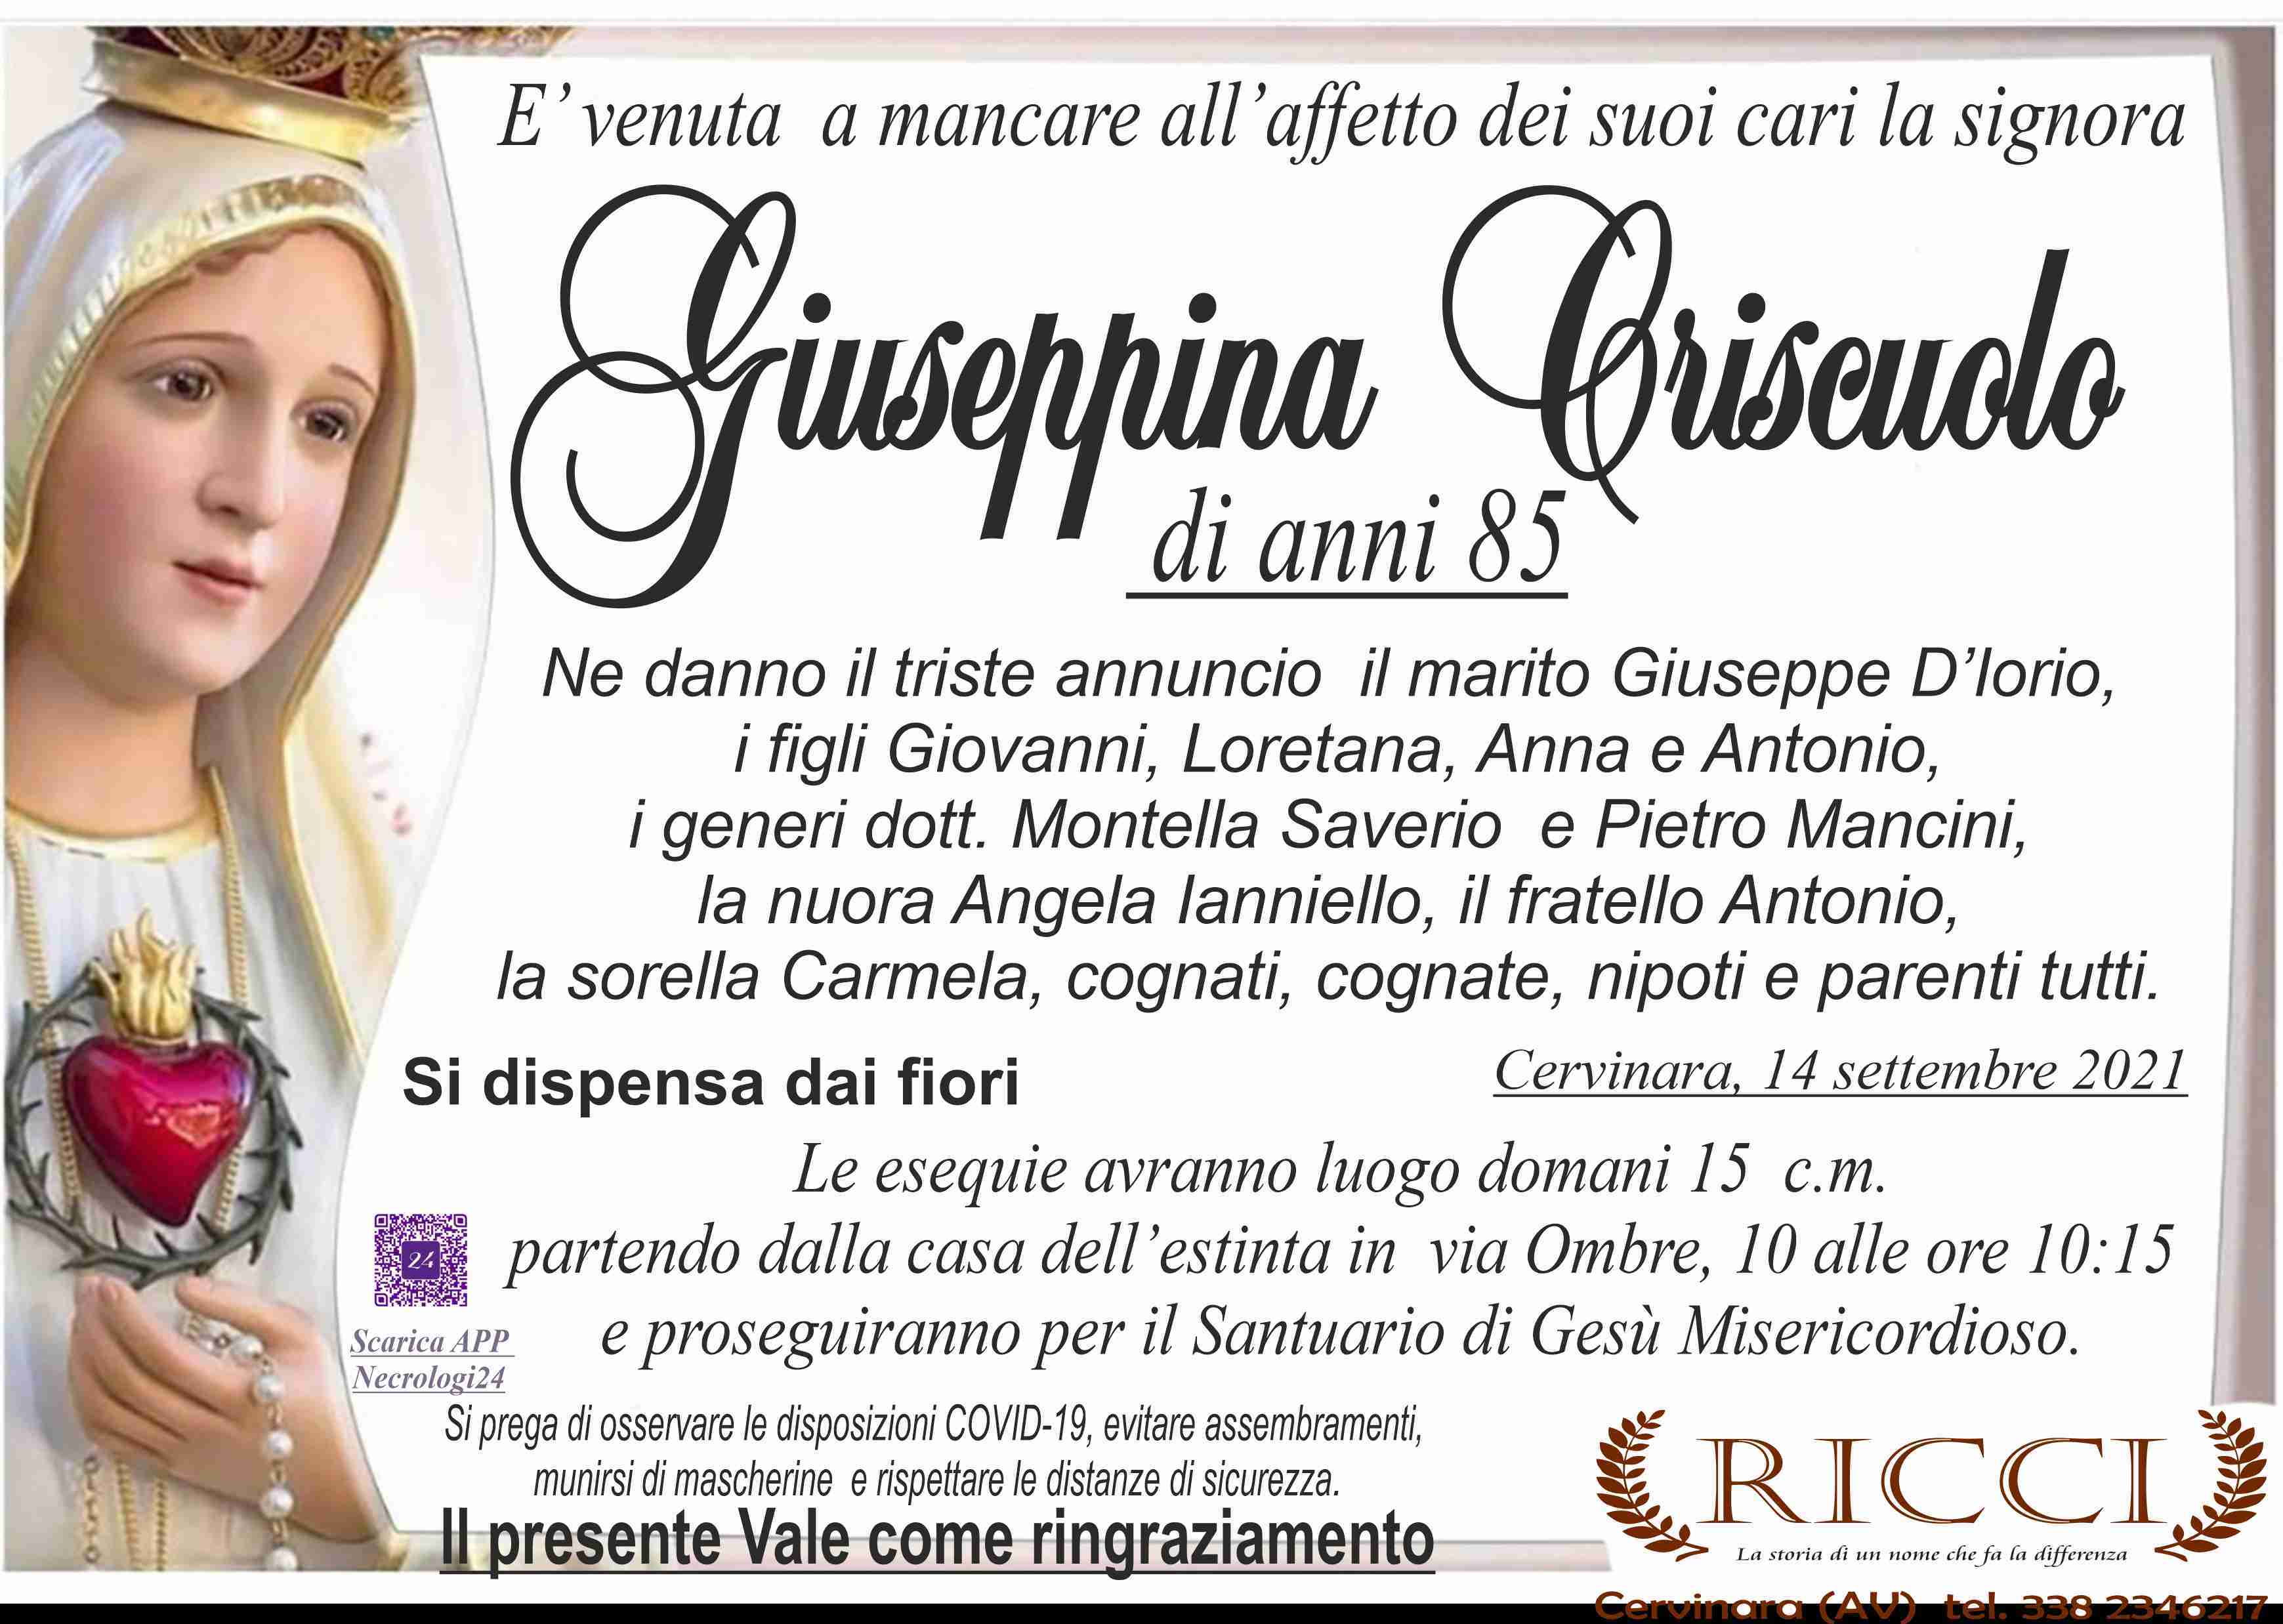 Giuseppina Criscuolo